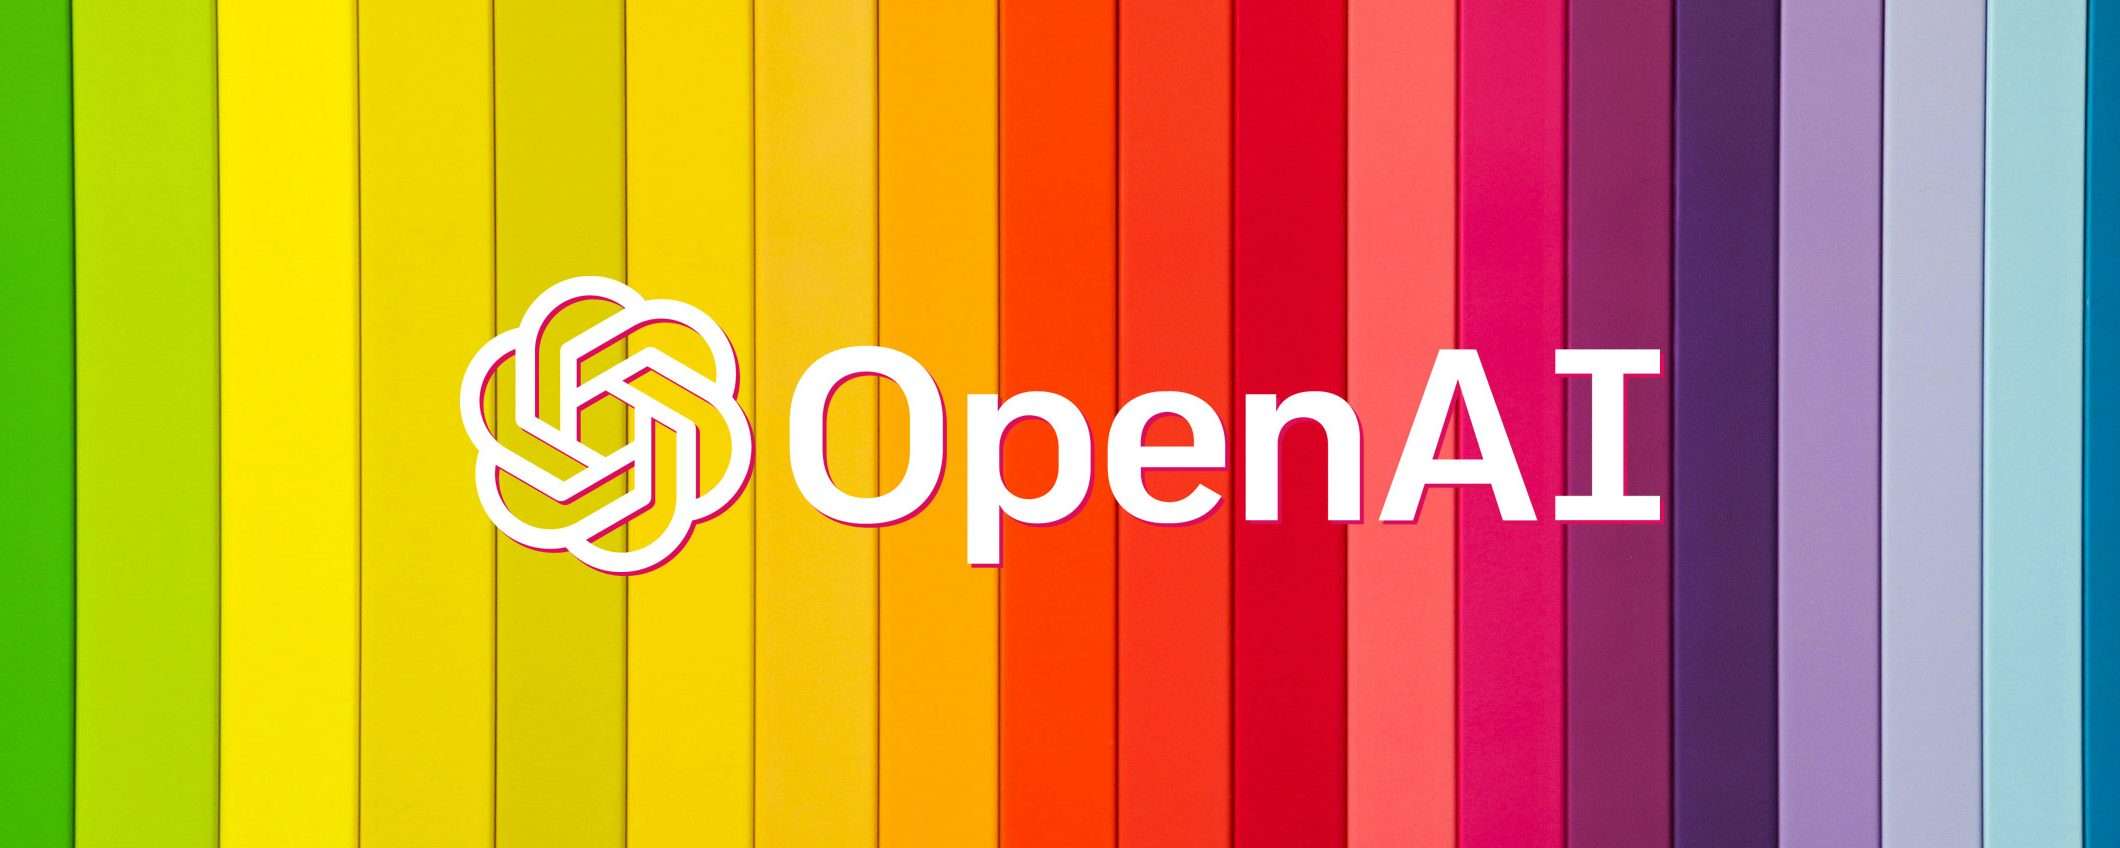 ChatGPT e notizie: OpenAI con Le Monde e Prisa Media